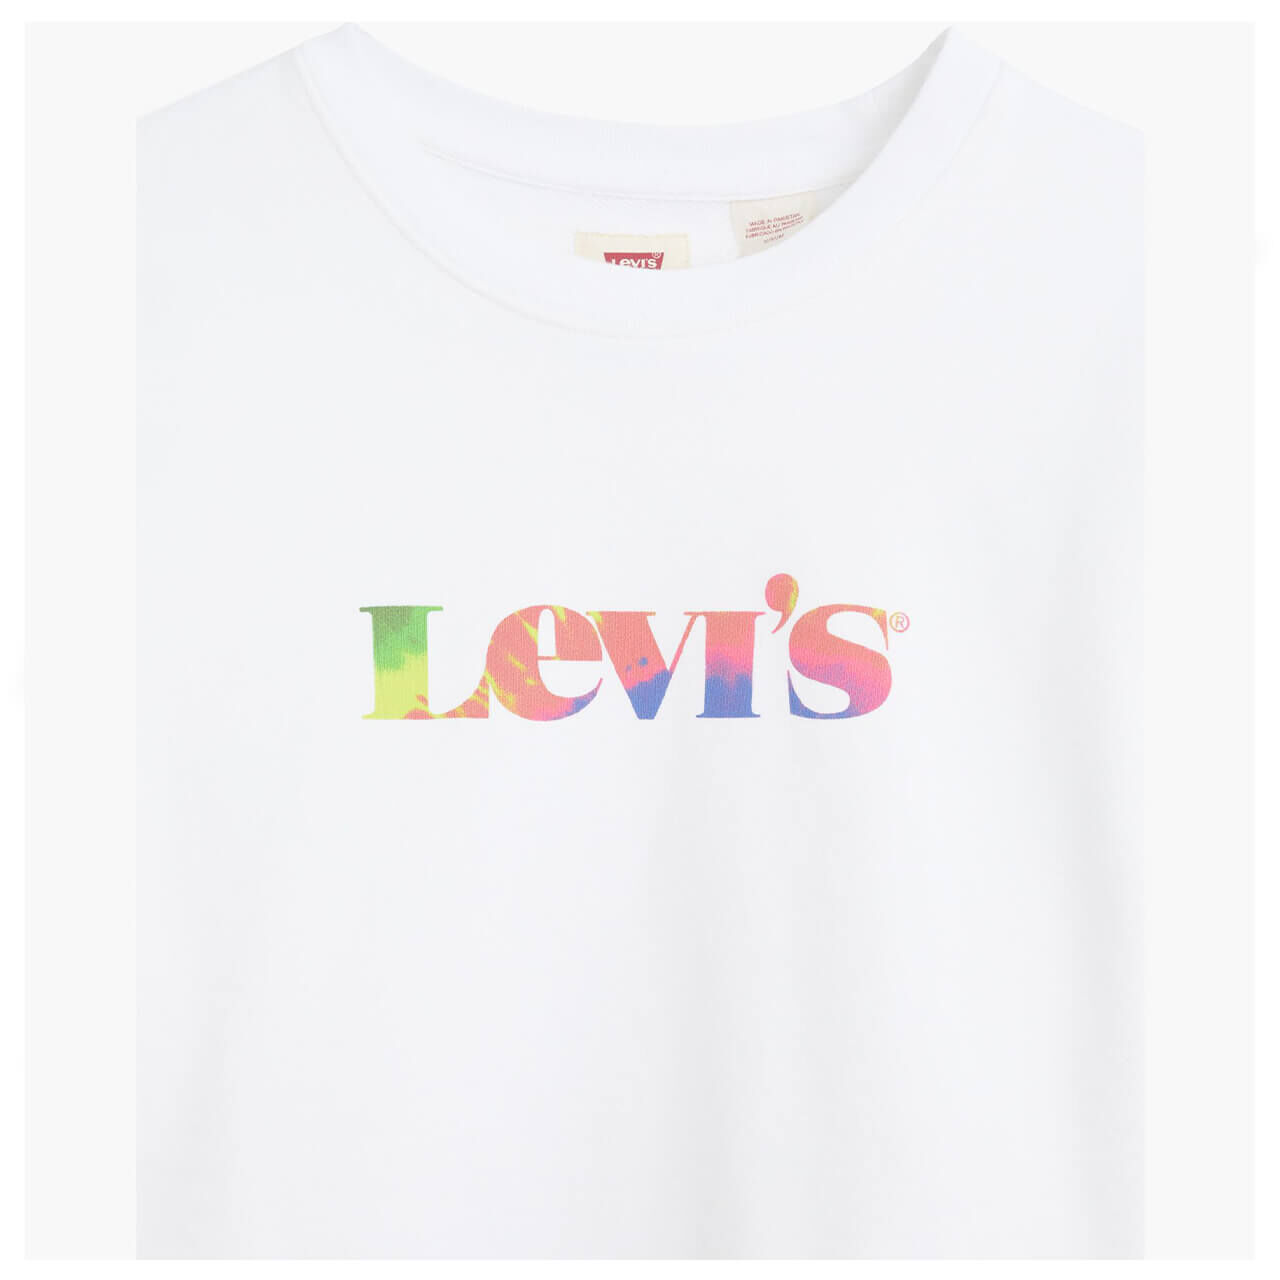 Levis Sweatshirt für Damen in Weiß mit Print, FarbNr.: 0000